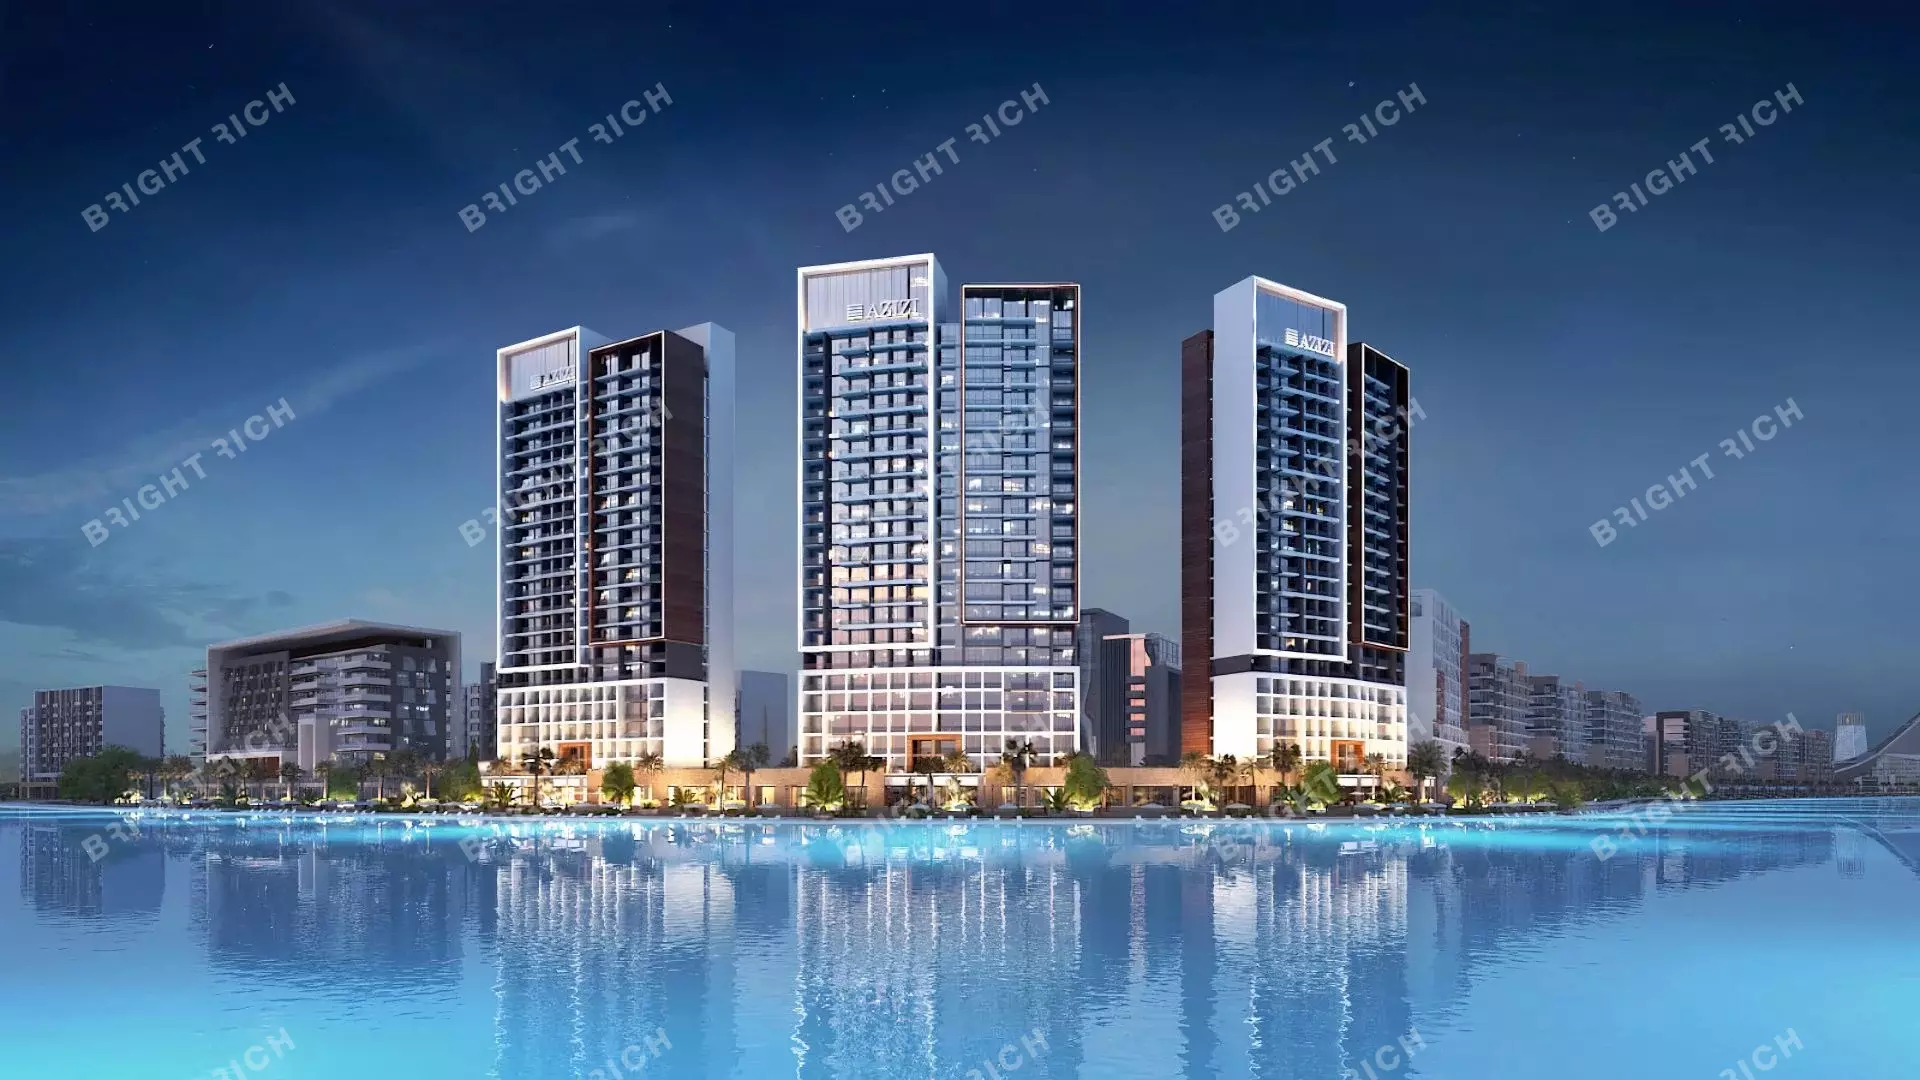 Azizi Riviera Building 63, apart complex in Dubai